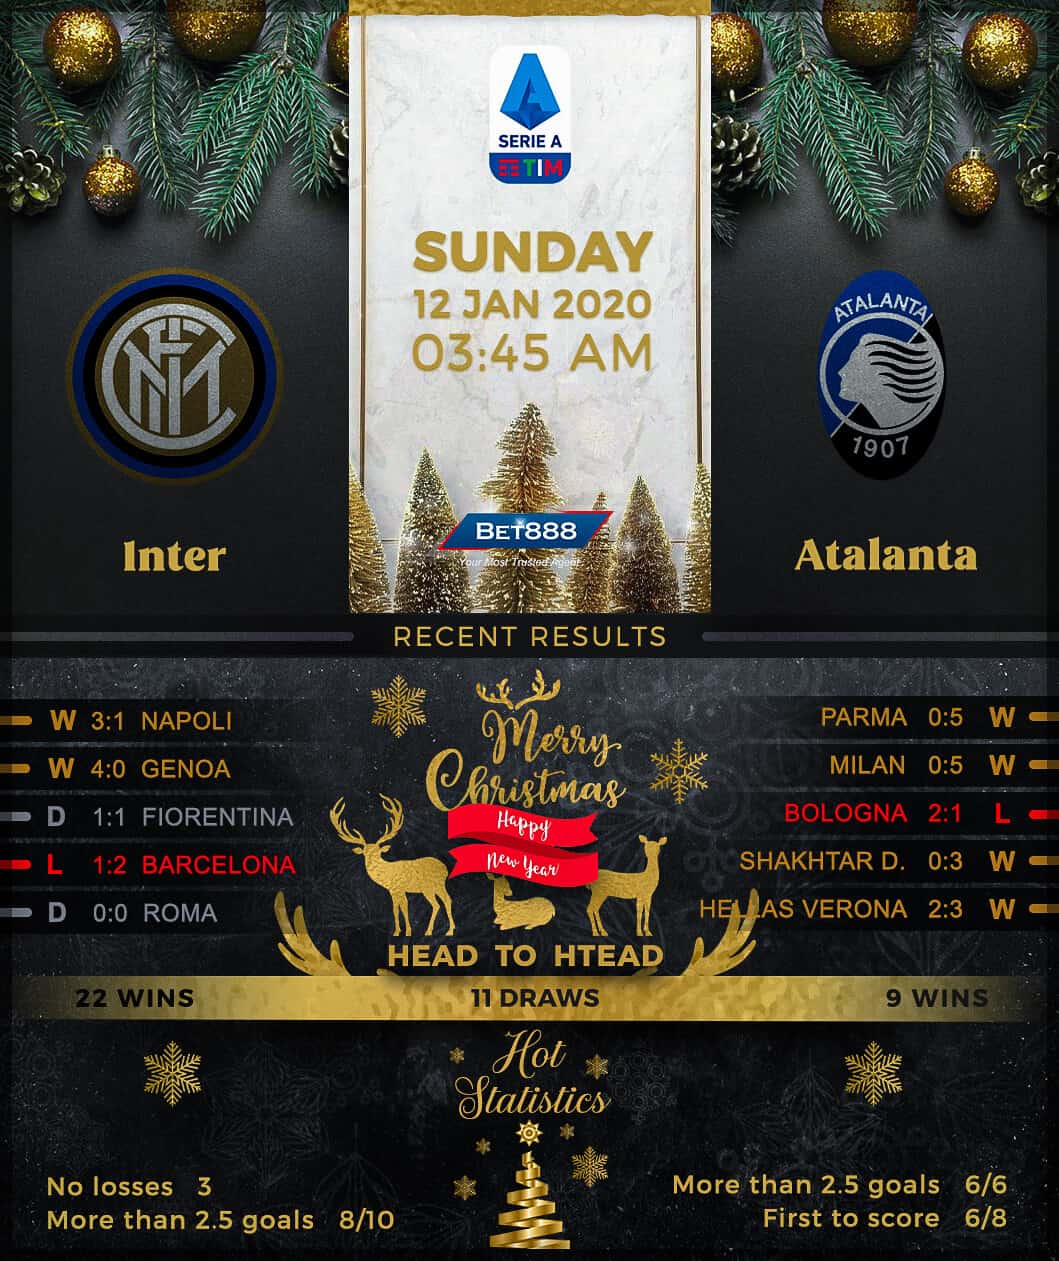 Internazionale vs Atalanta﻿ 12/01/20